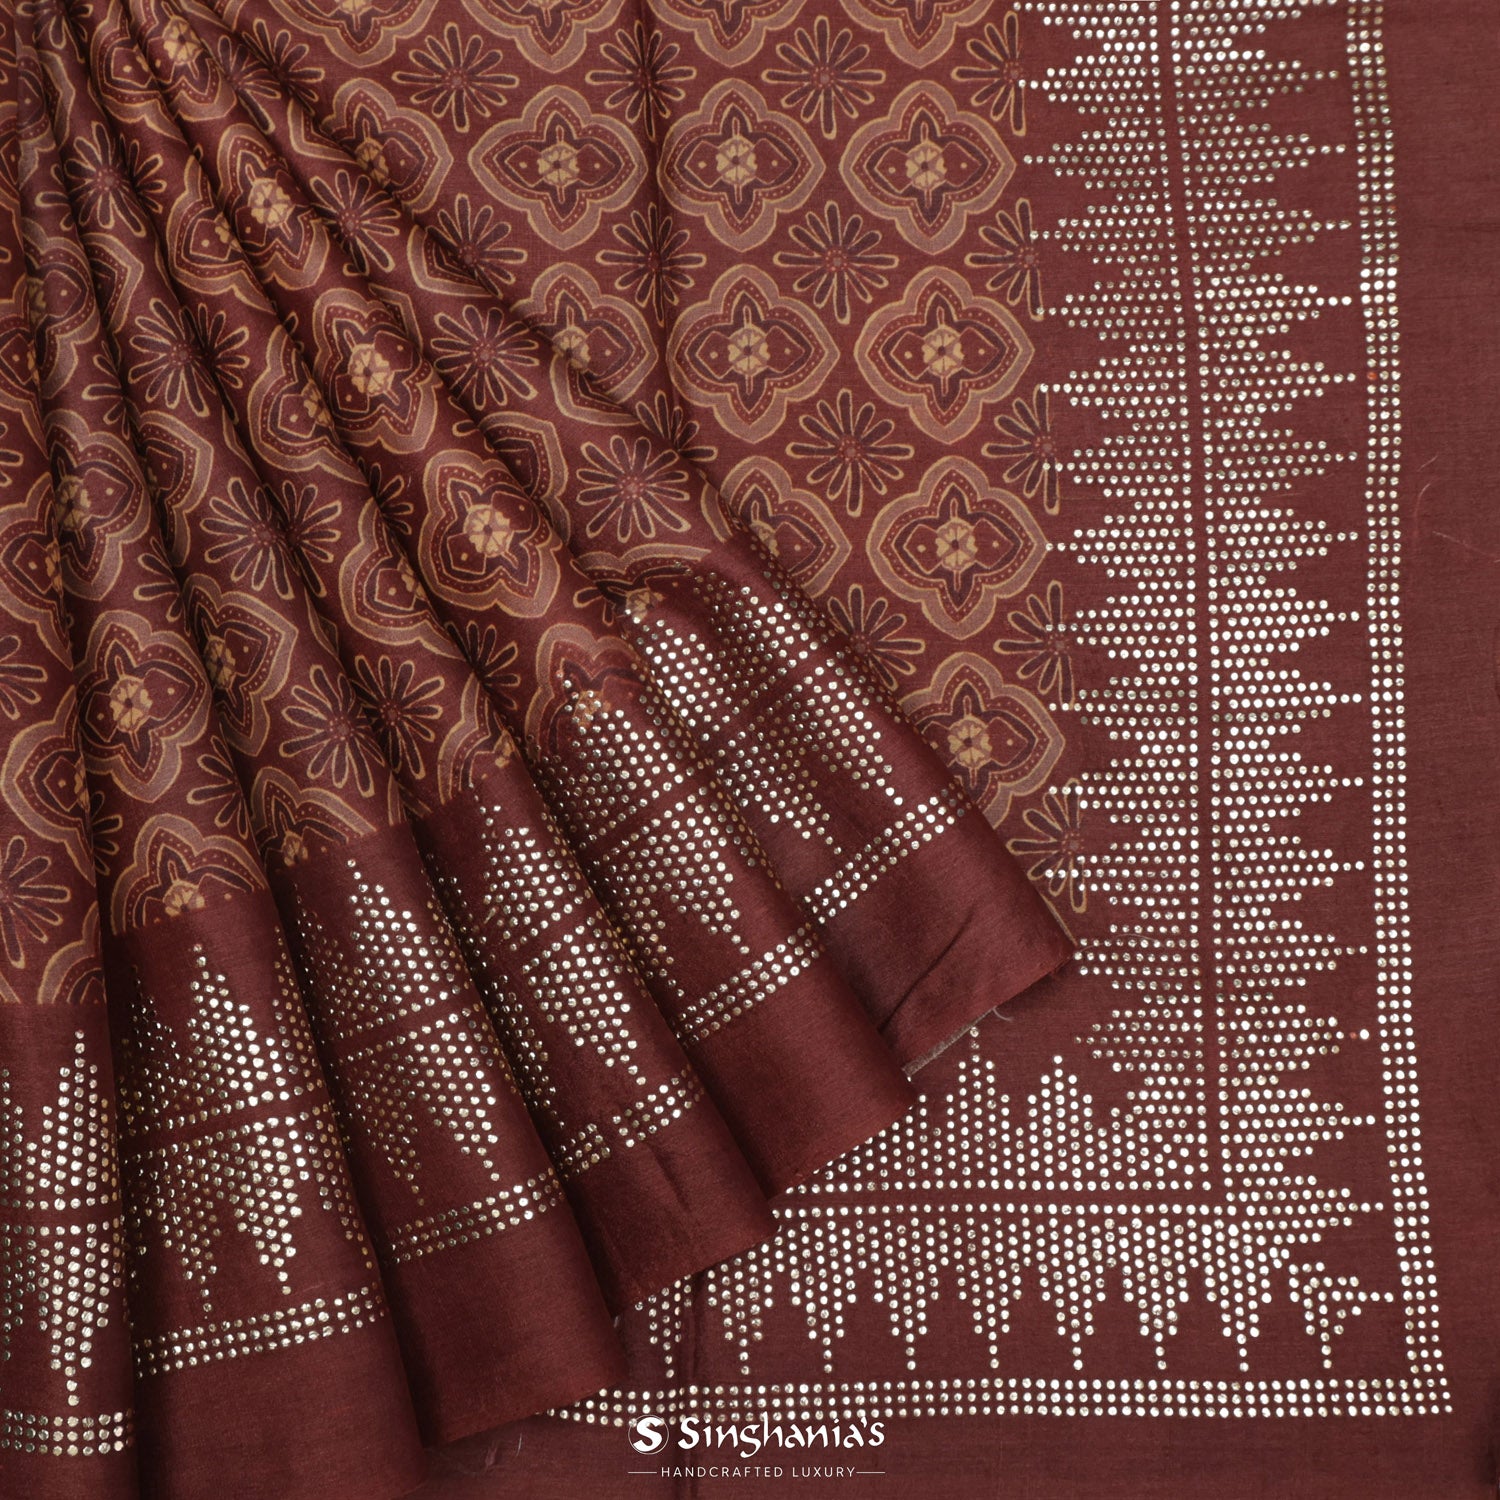 Dark Chestnut Brown Printed Tussar Silk Saree With Ajrakh-Inspired Pattern